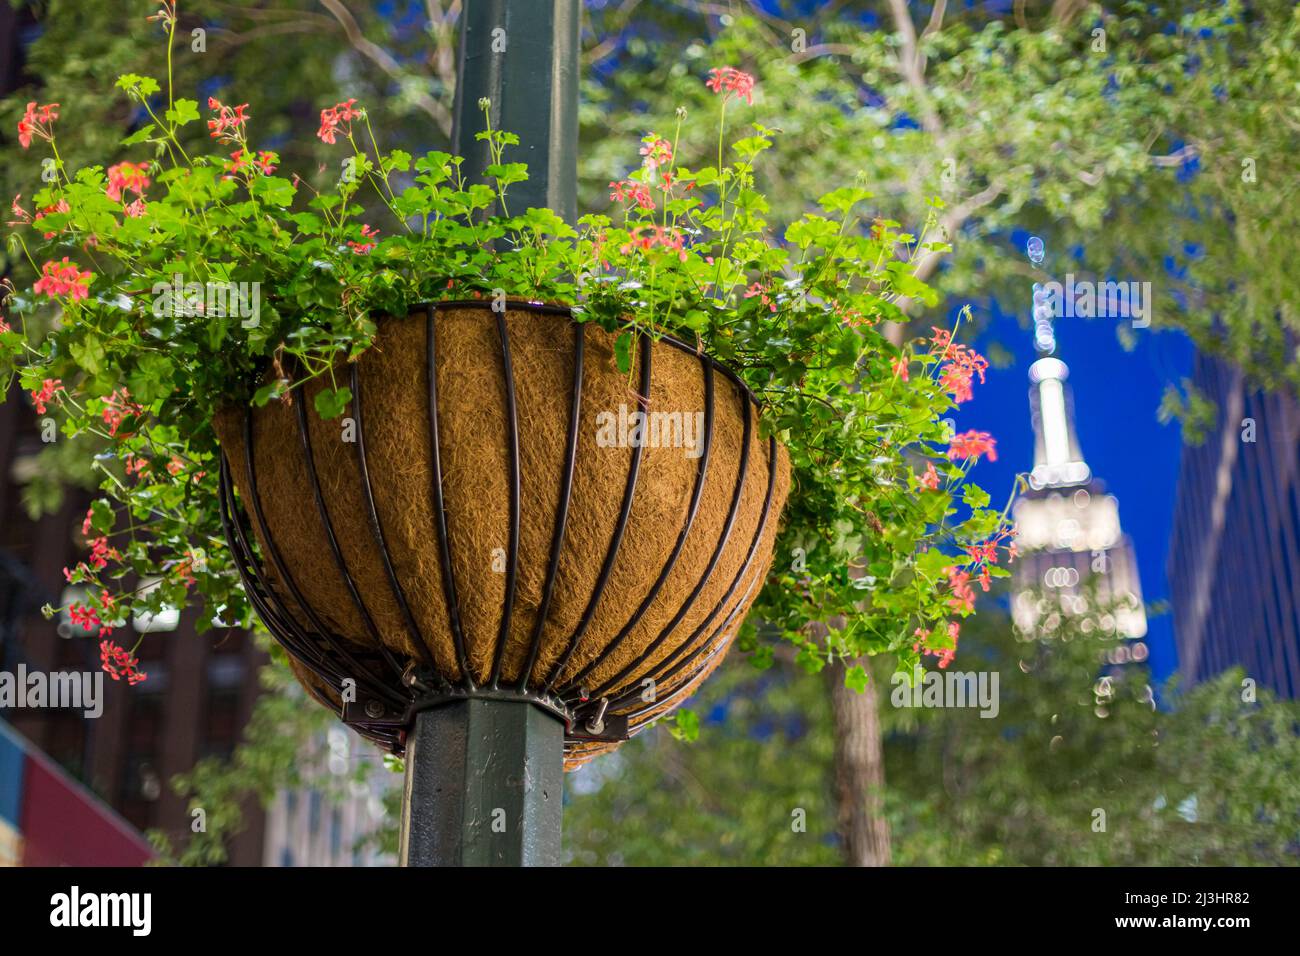 QUARTIER DES VÊTEMENTS, New York City, NY, Etats-Unis, fleurs suspendues autour Banque D'Images